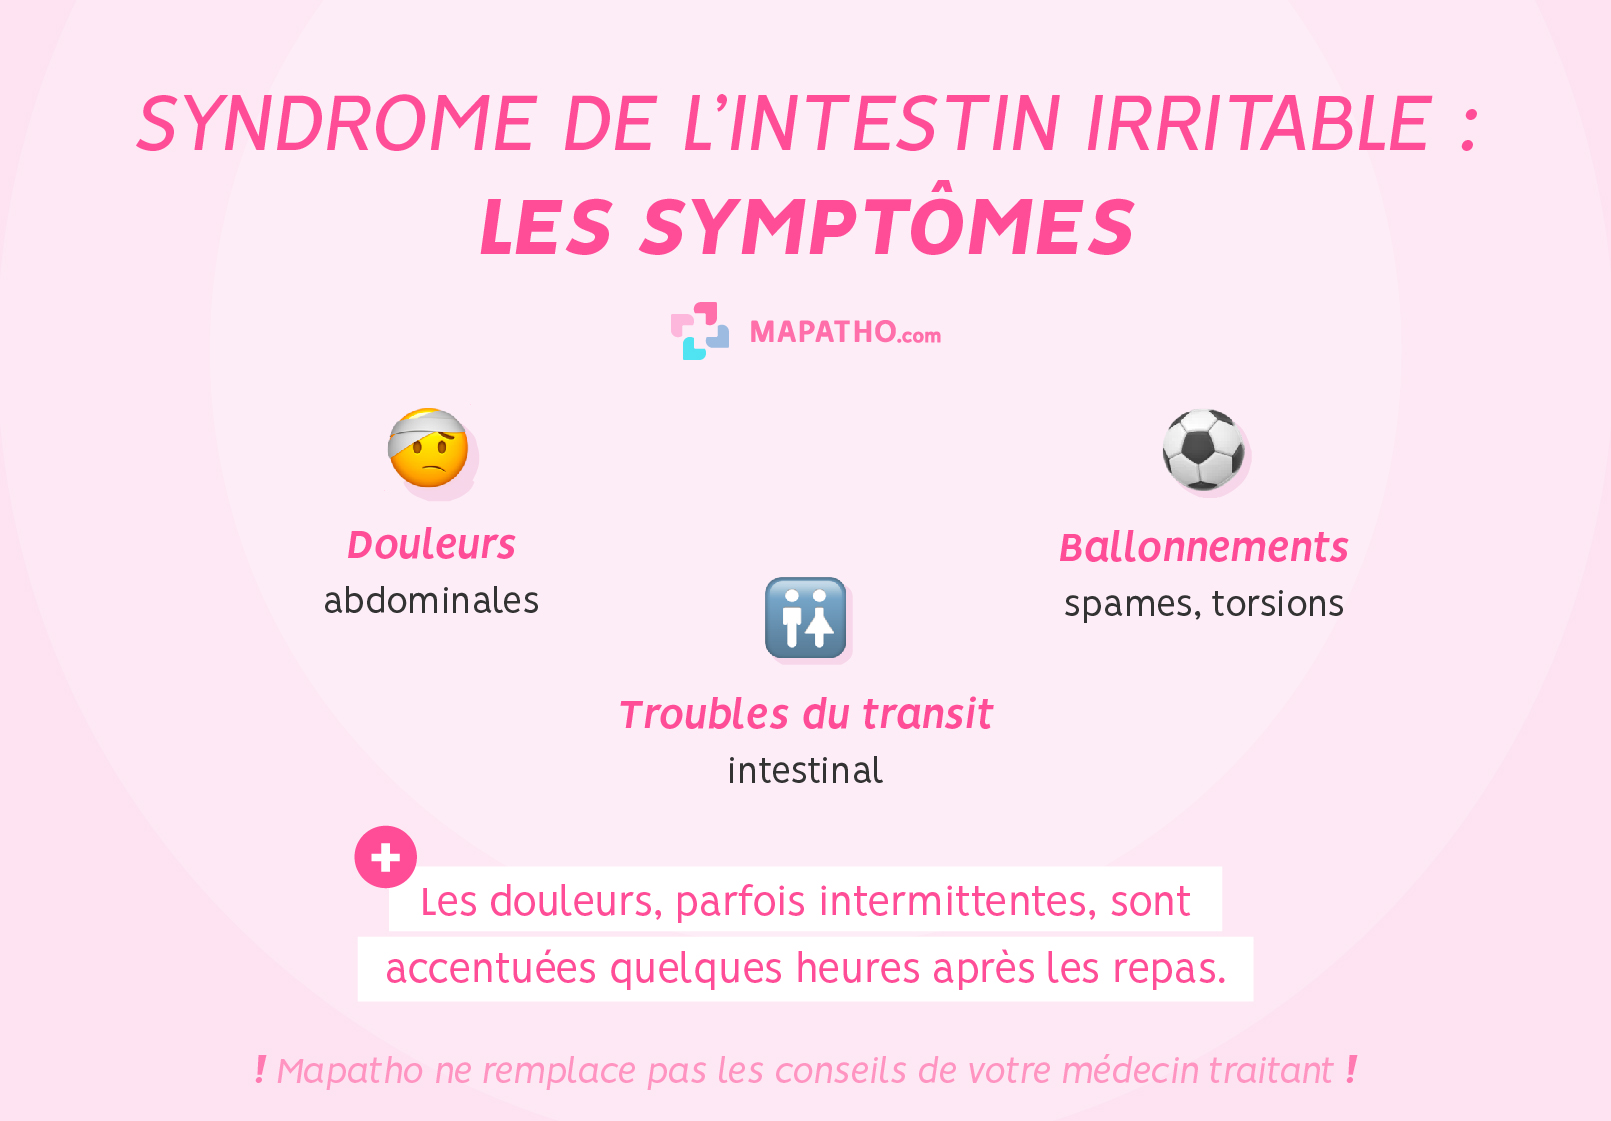 Les symptômes du syndrome de l'intestin irritable